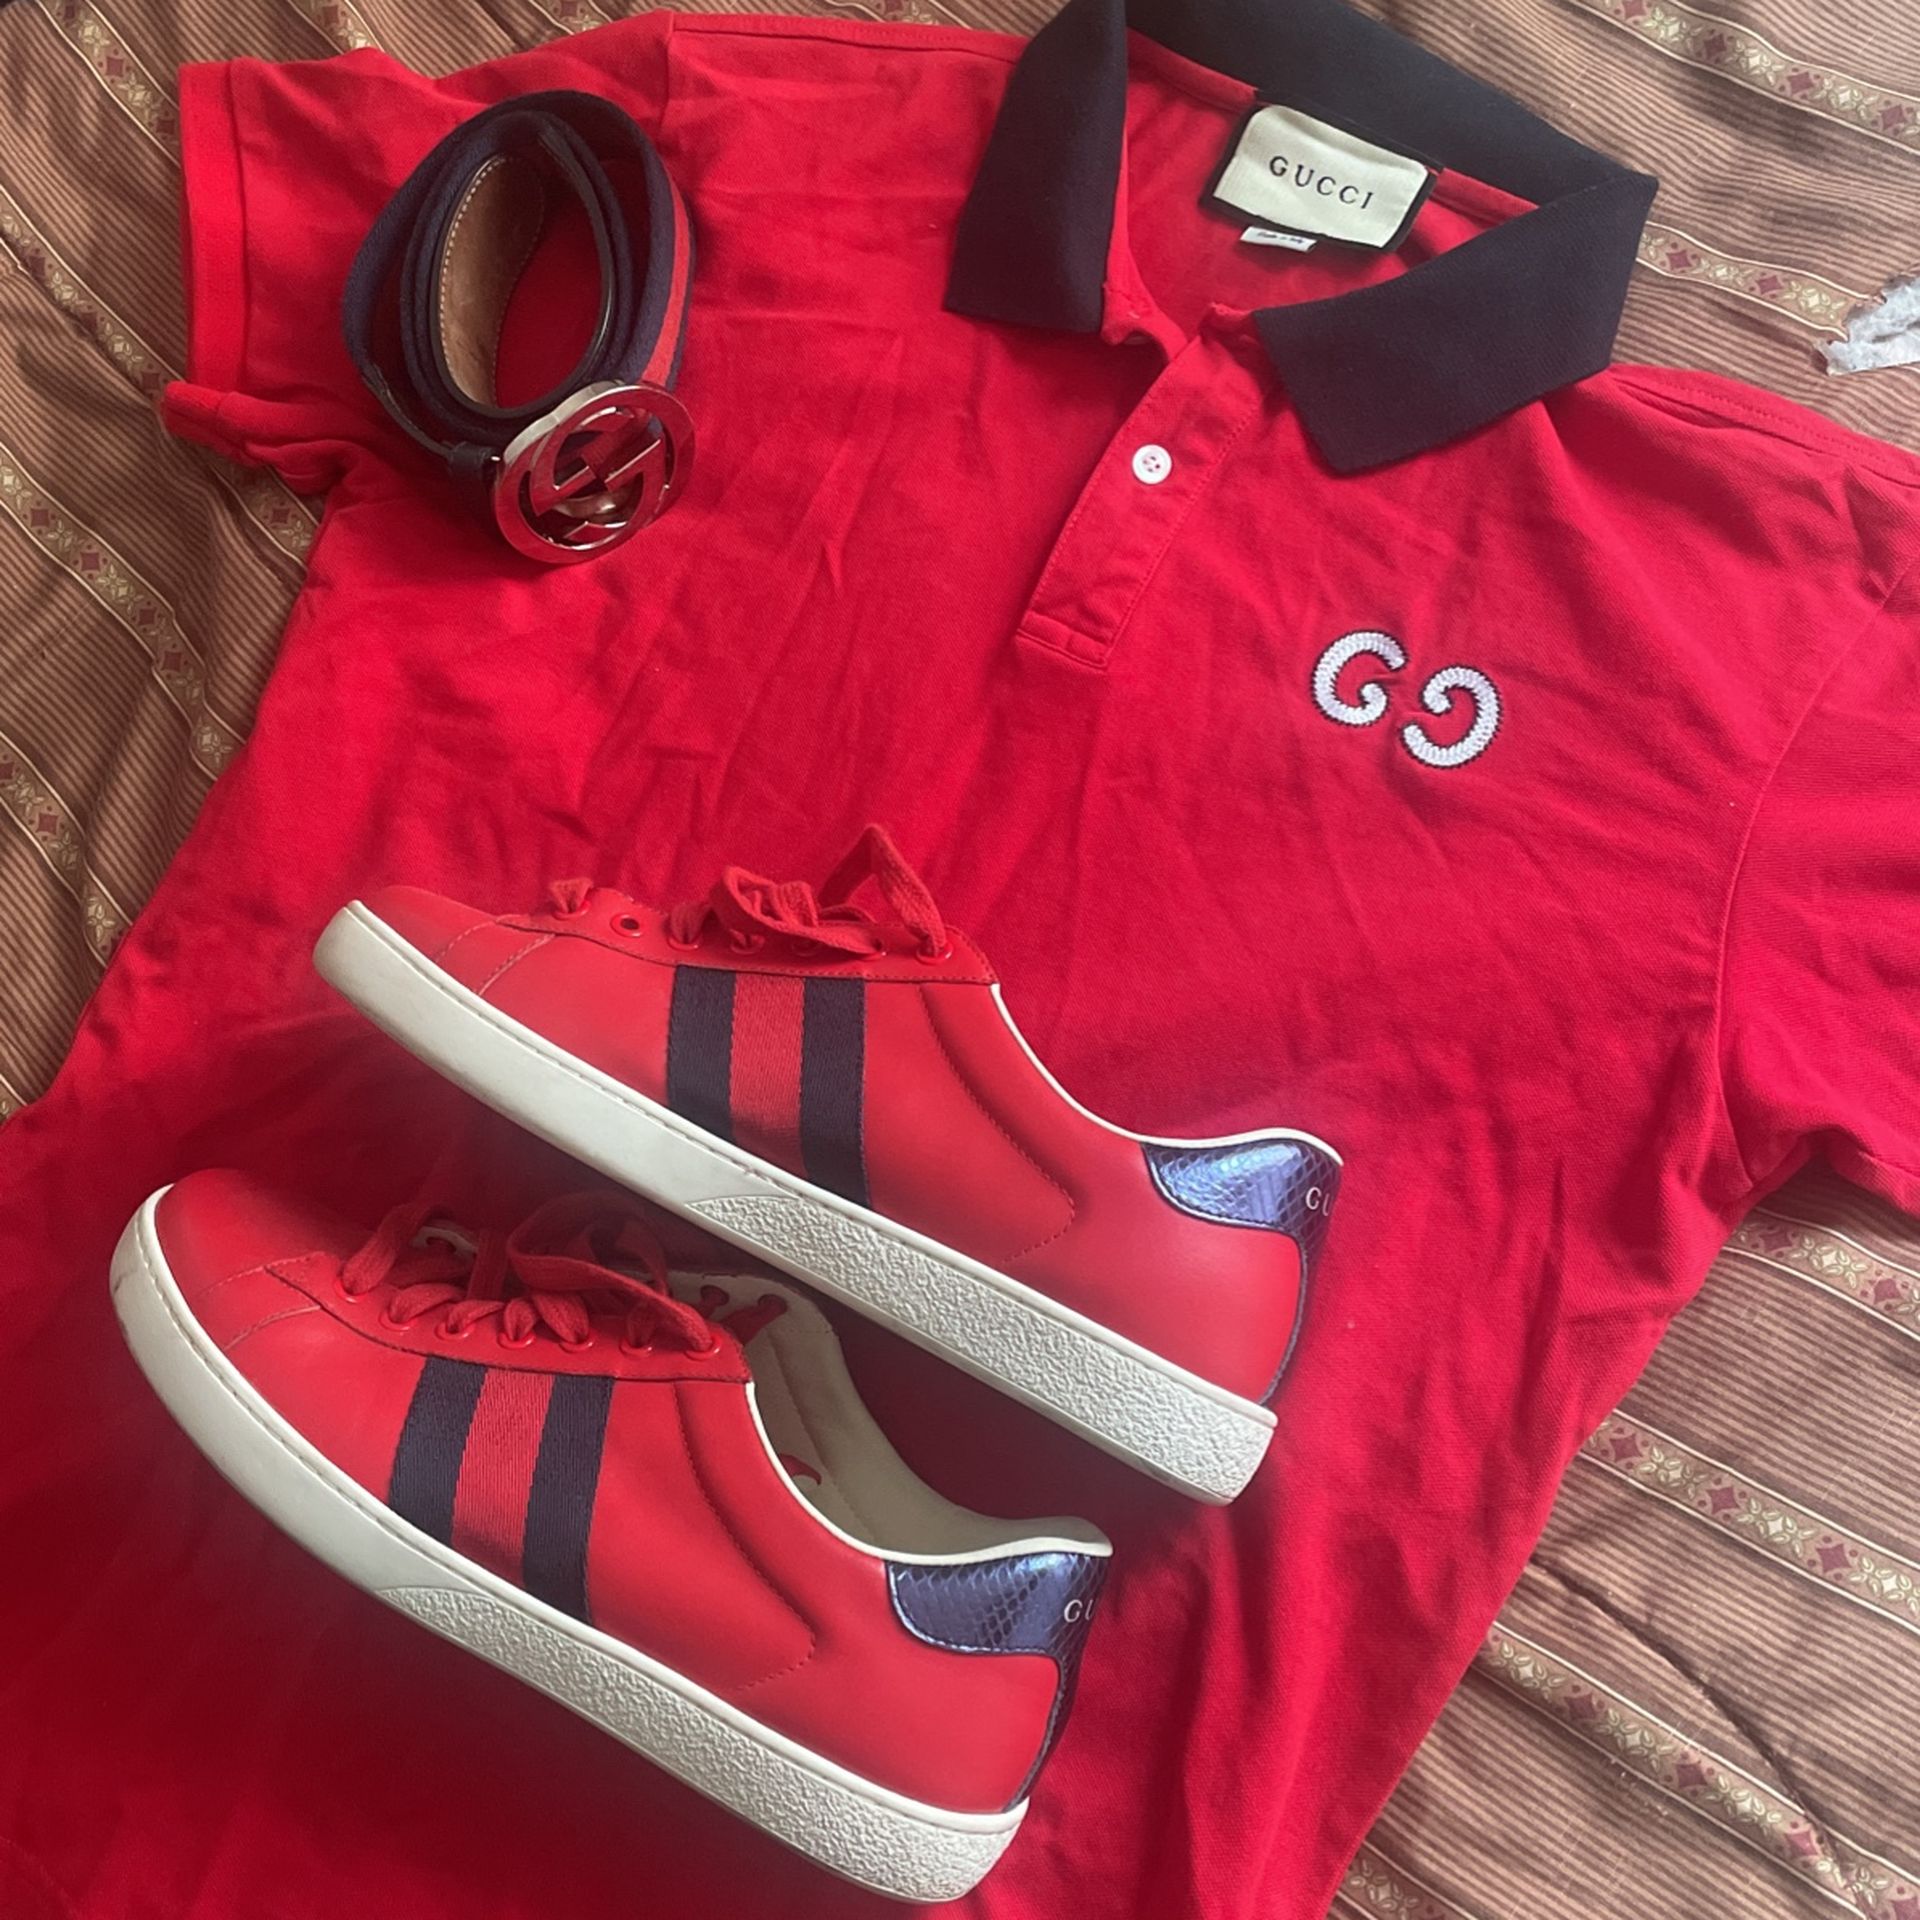 Gucci Fit (Shirt, Belt, Shoes)